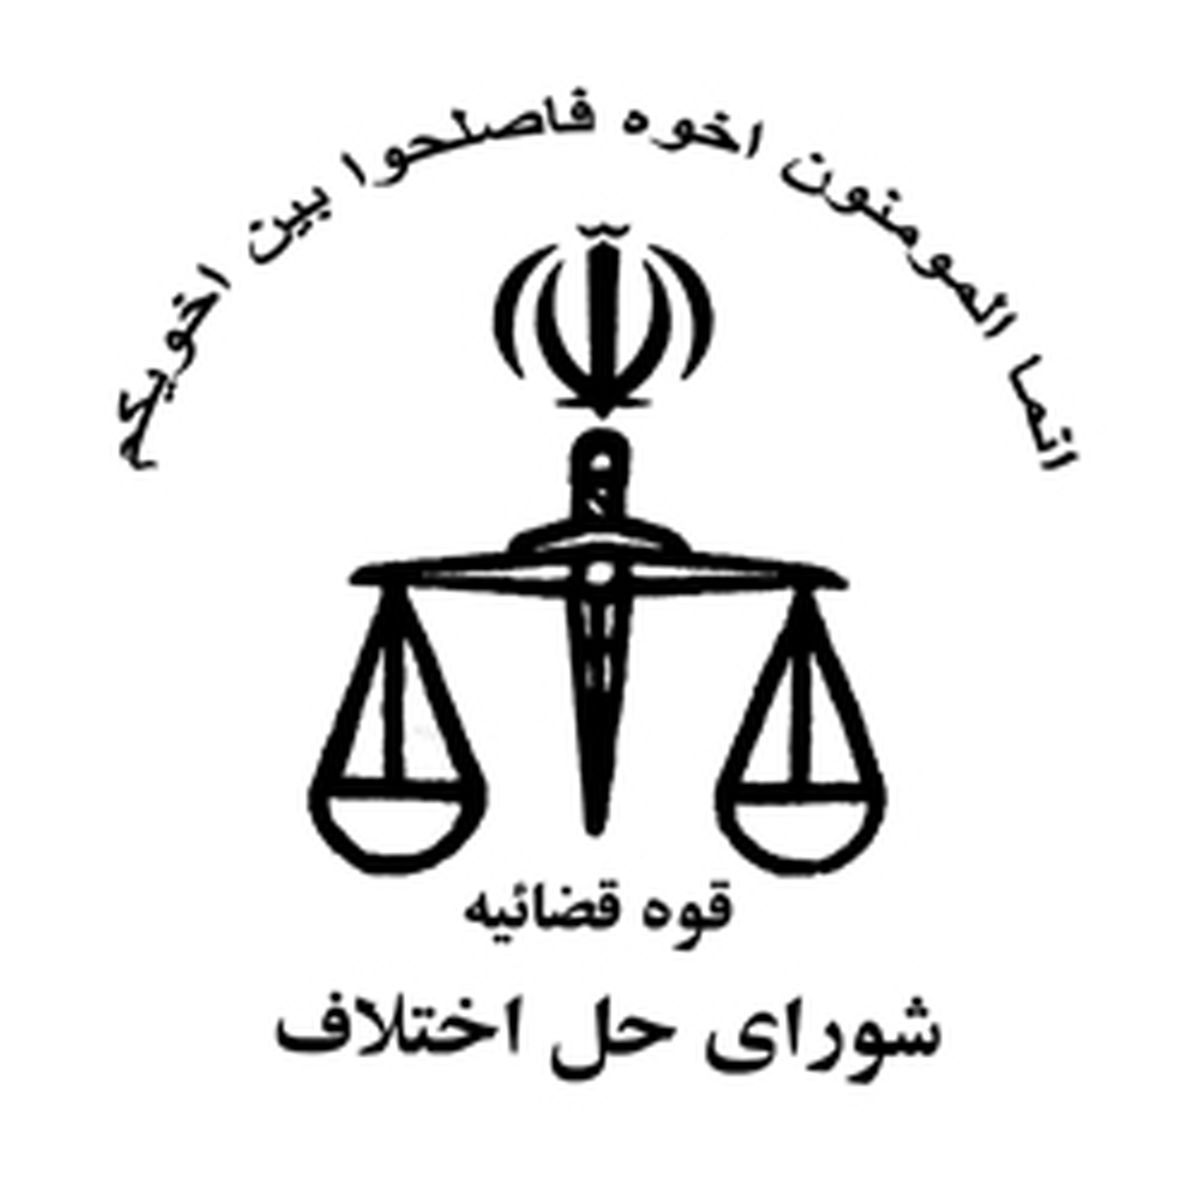 رئیس شوراهای حل اختلاف خوزستان: شوراهای حل اختلاف باید تقویت شوند